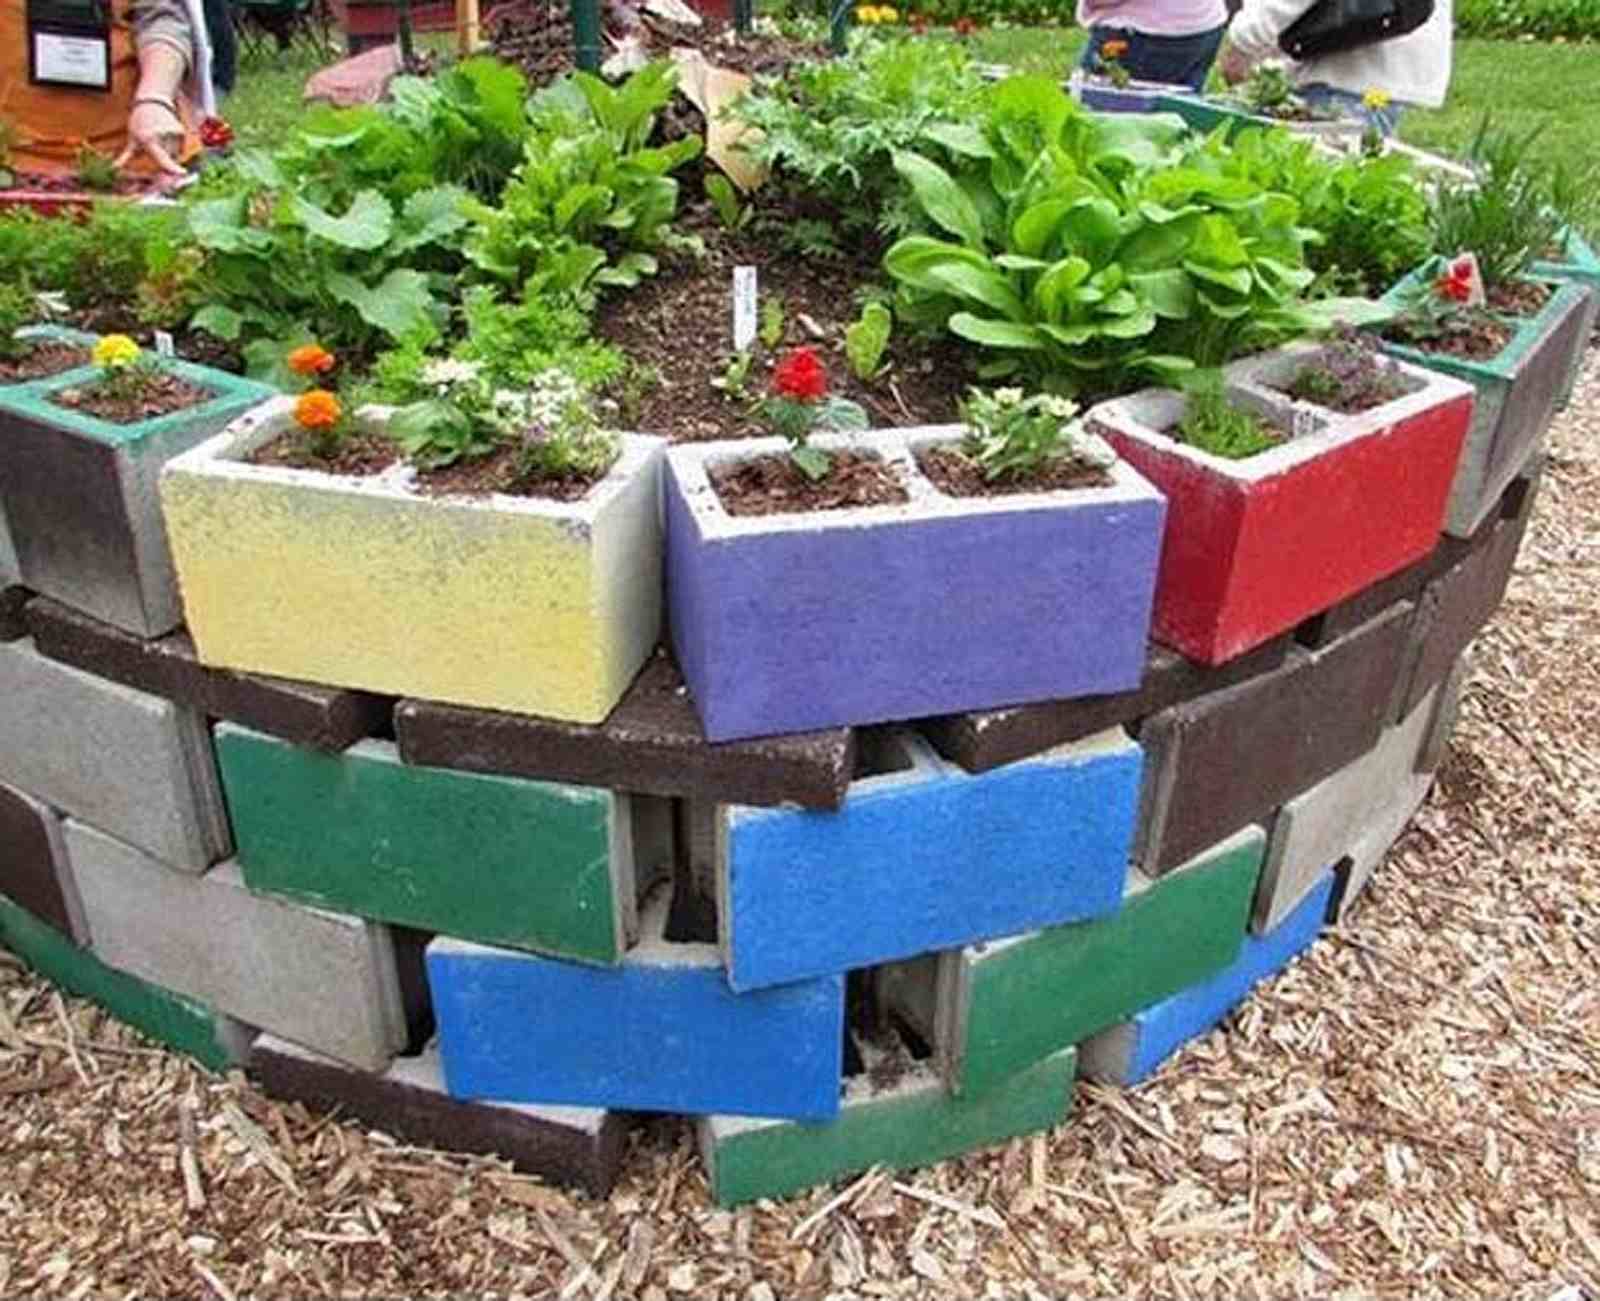 Cinder Block Raised Garden Bed